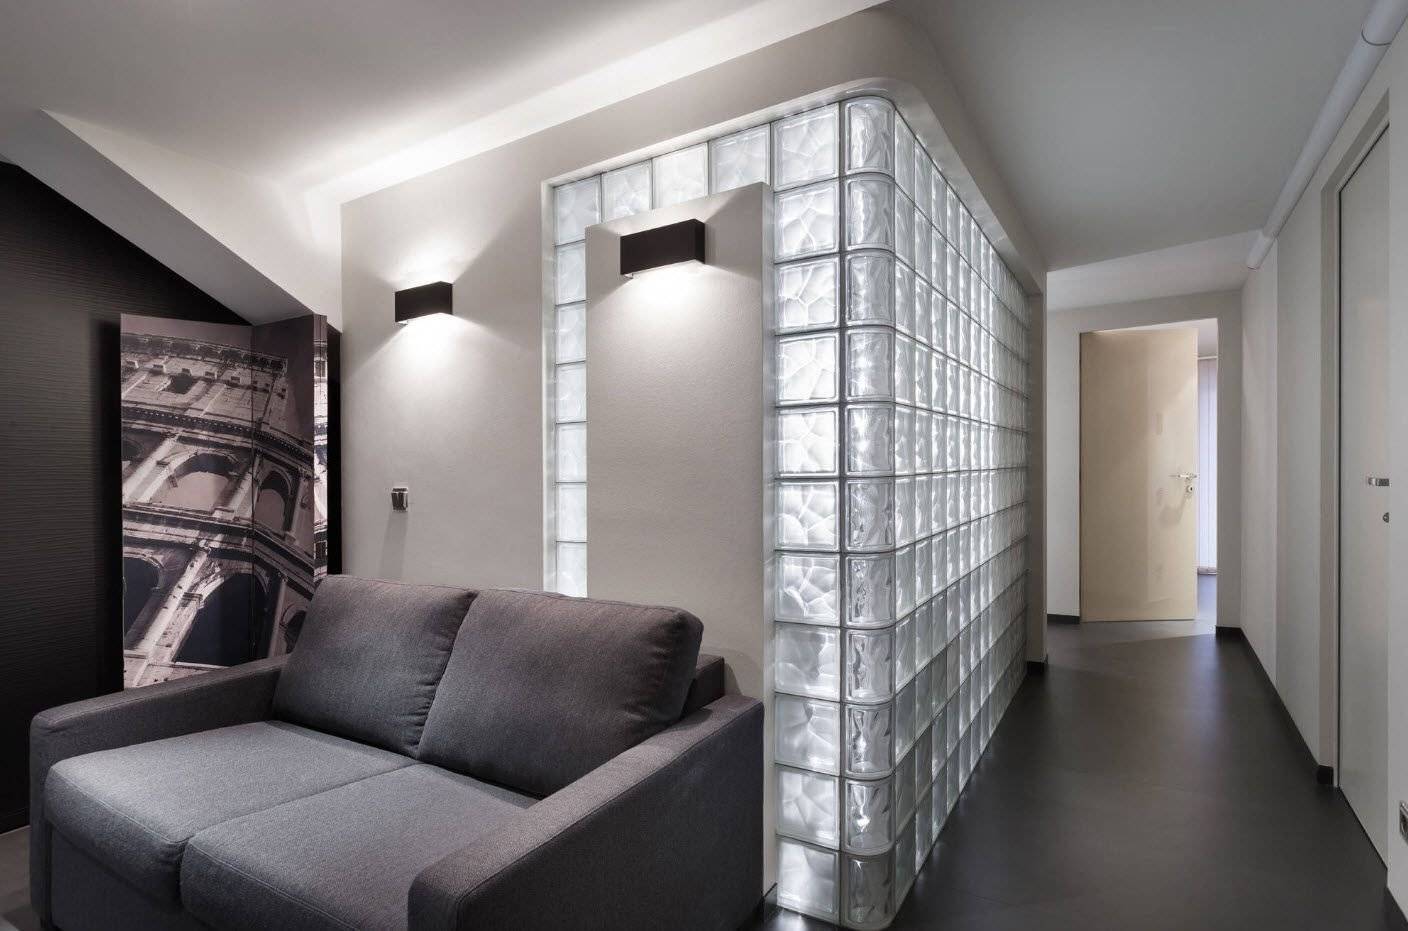 Стеклянная перегородка своими руками (50 фото): межкомнатные в квартире студии, раздвижные в интерьере, витражные и матовые, прозрачные стены, дизайн в доме